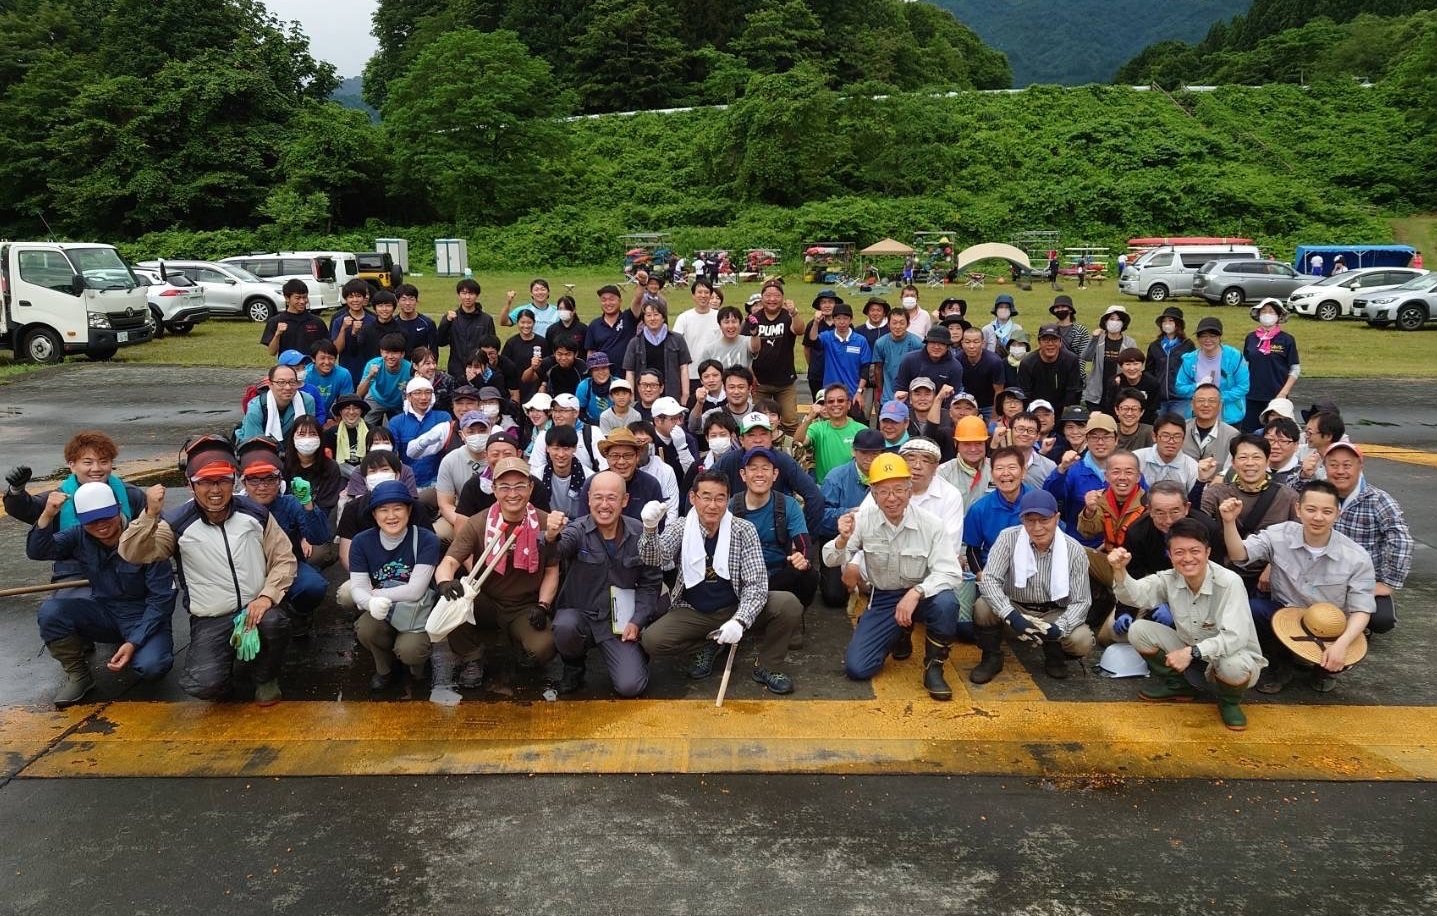 ユトリアグループ社員有志が山形県西川町を訪れ、町民とともに清掃活動を実施（ゴミ拾い、草刈等）その際の集合写真です。